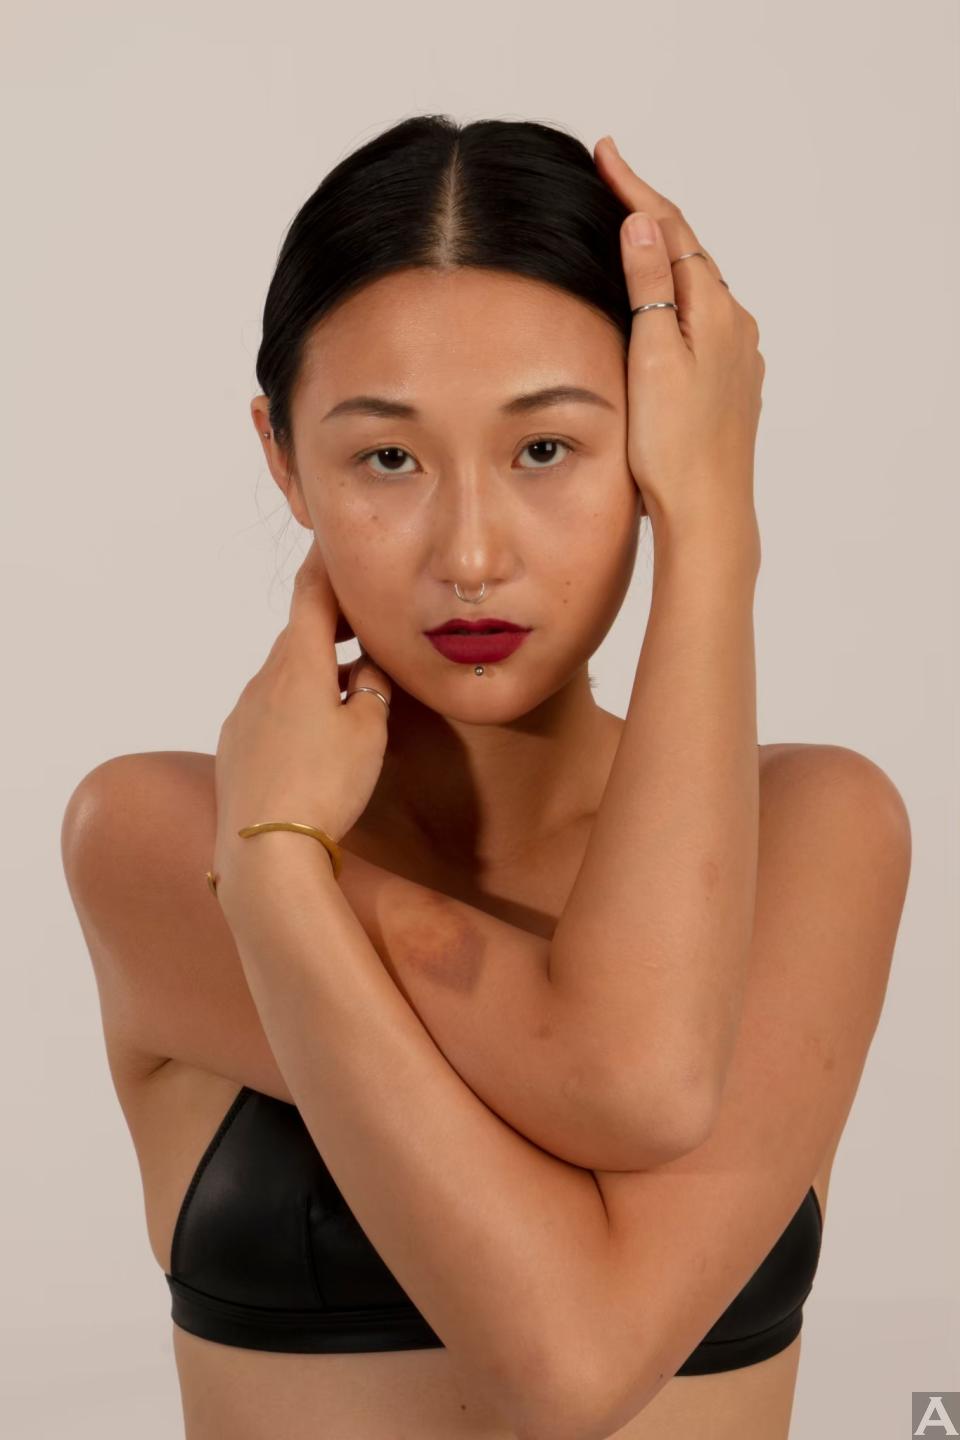 東京外国人モデル事務所アクアモデルのアジア人モデルカク